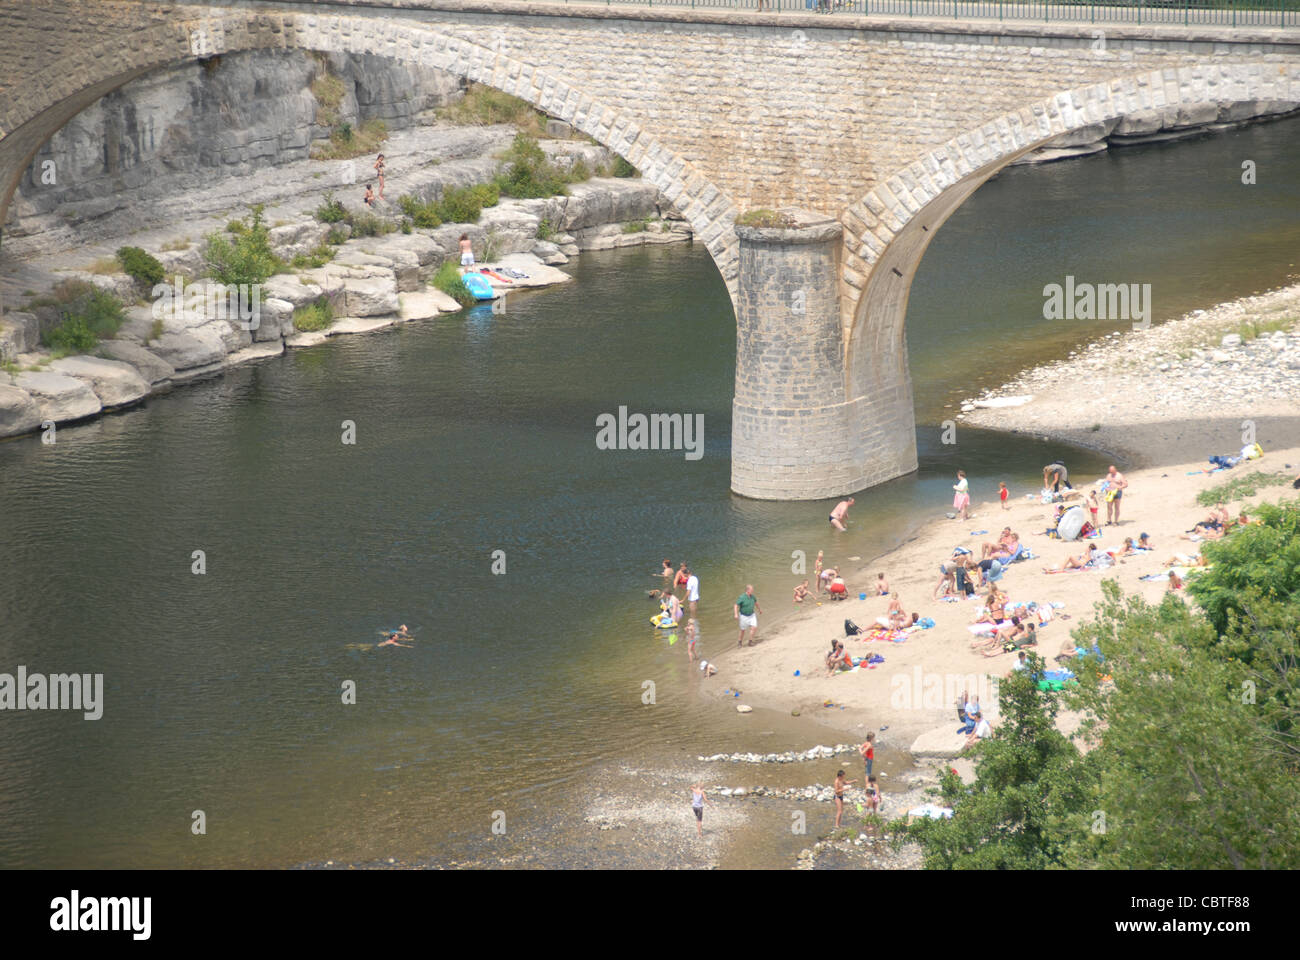 Arc d'un pont traversant la rivière Ardèche à Balazuc, l'un des plus beaux villages de France, dans le sud de la France Banque D'Images